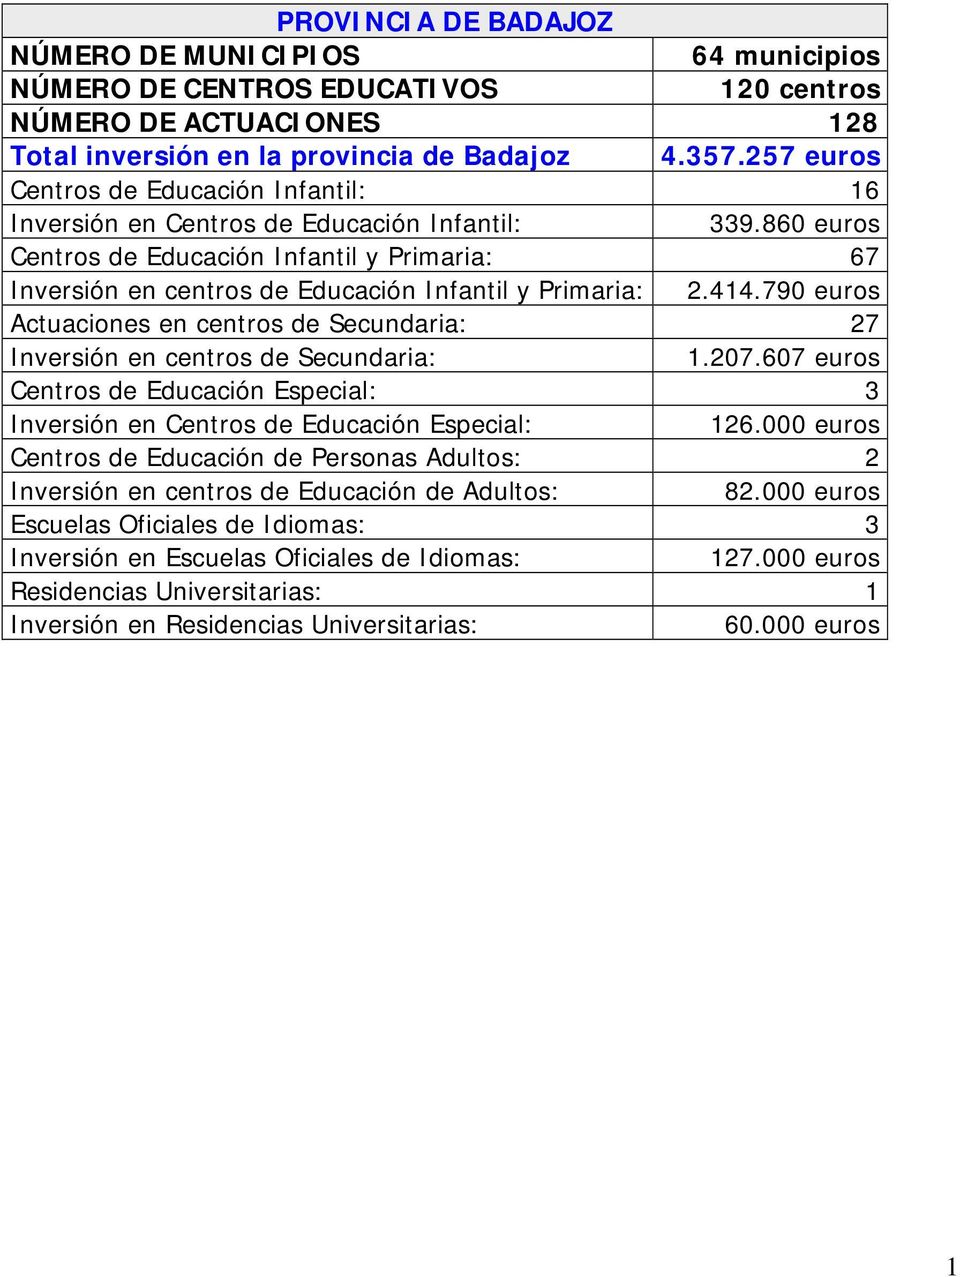 860 euros Centros de Educación Infantil y Primaria: 67 Inversión en centros de Educación Infantil y Primaria: 2.414.